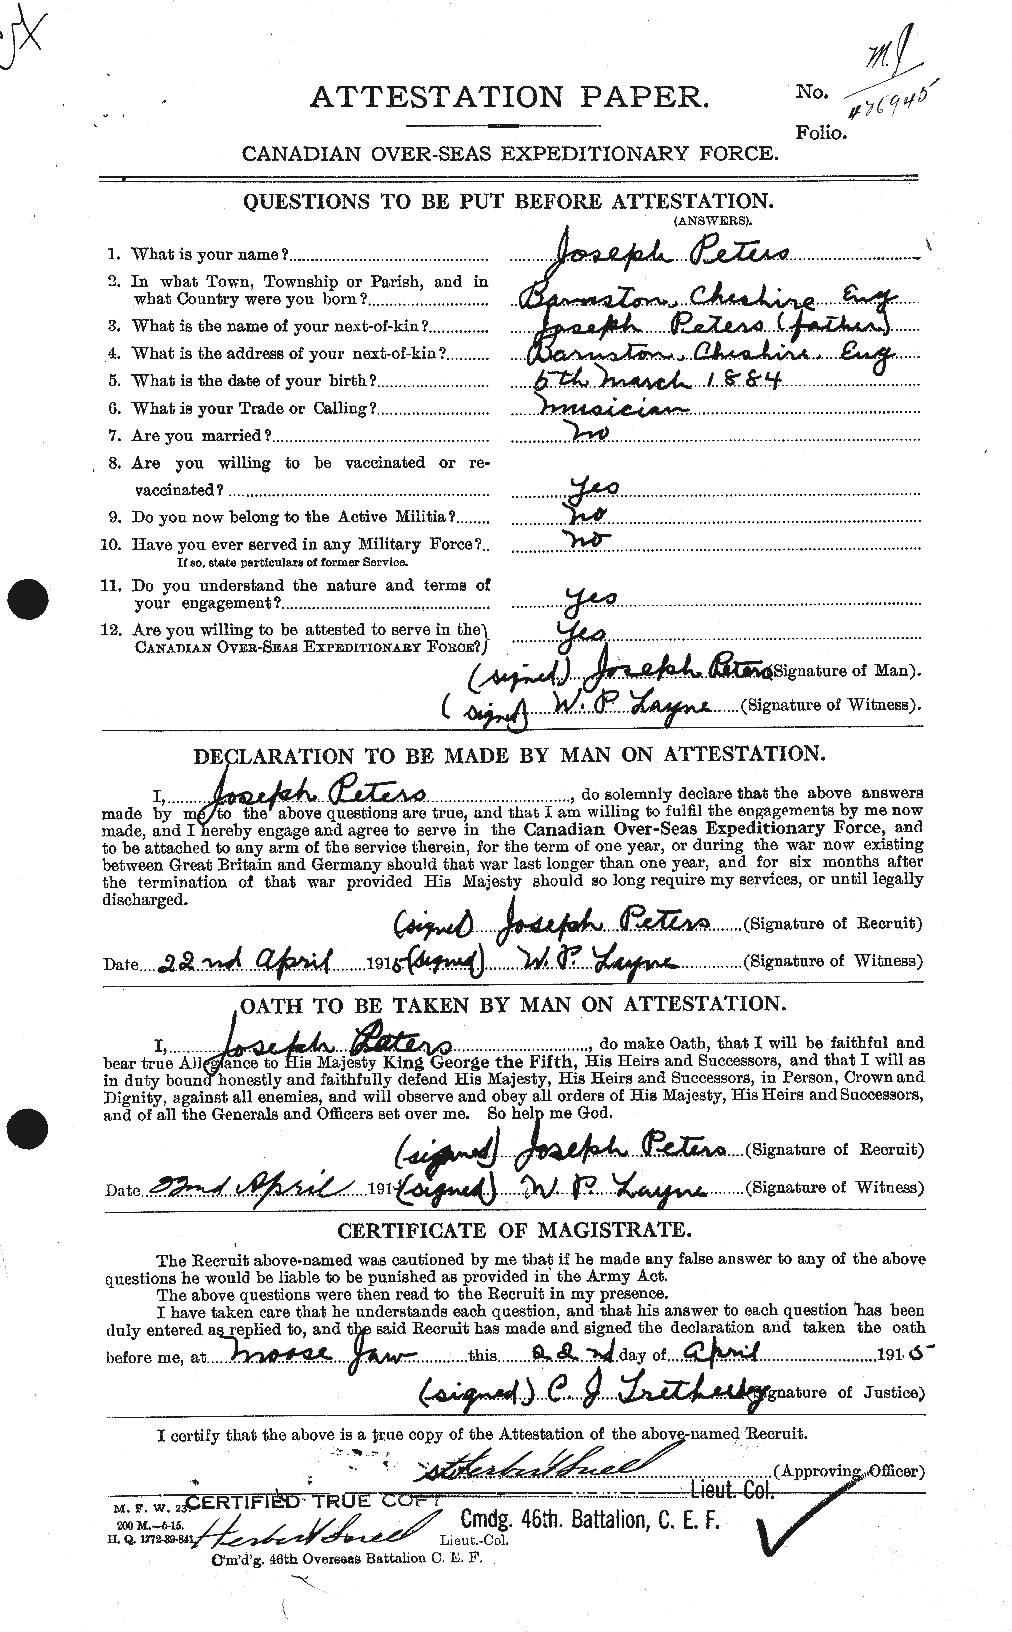 Dossiers du Personnel de la Première Guerre mondiale - CEC 575554a